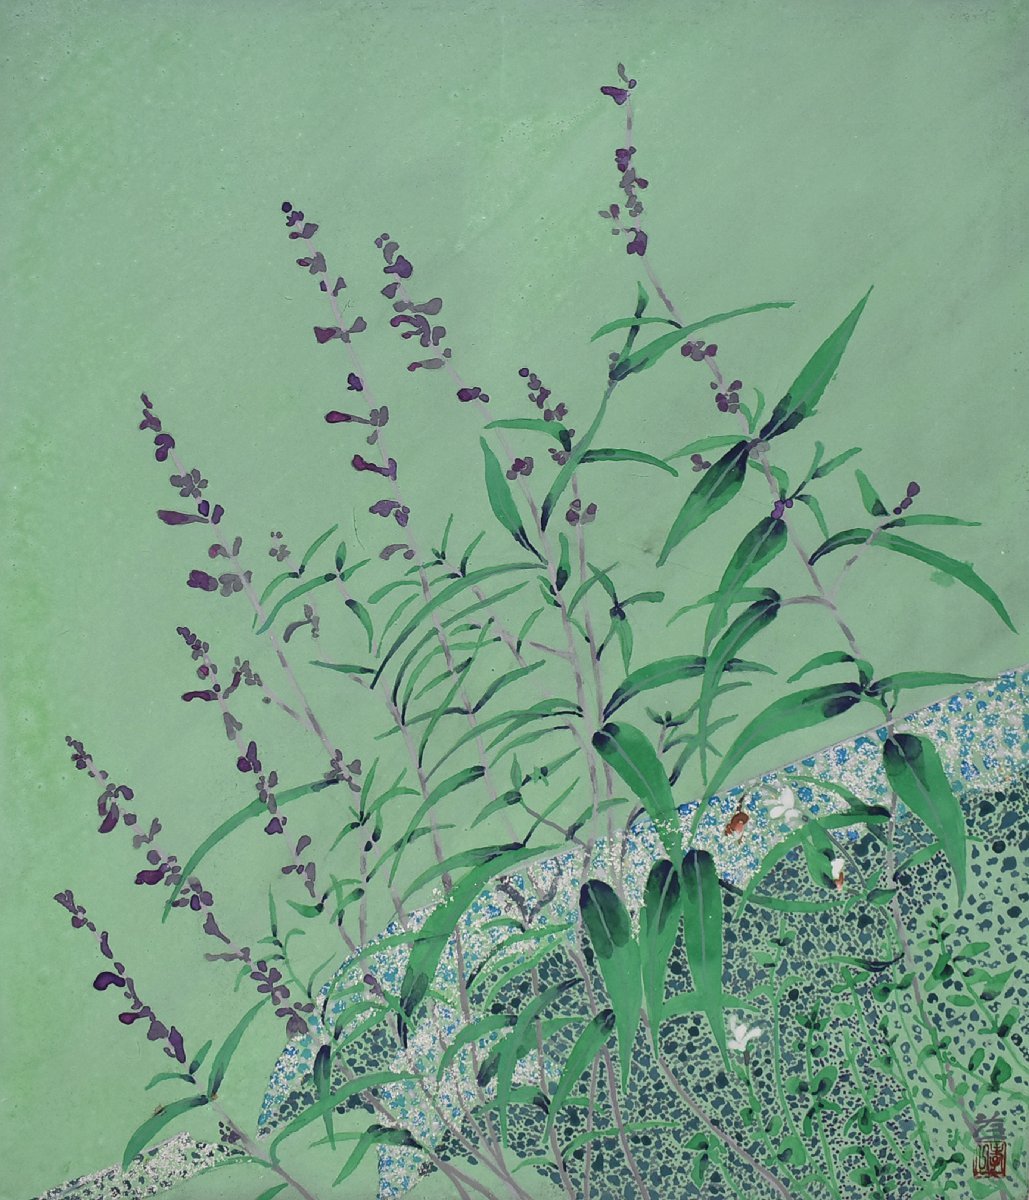 [Seiko Gallery – 5500 ausgestellte Objekte! Finden Sie Ihr Lieblingswerk] Beliebter japanischer Maler Koichi Suzuki 10F Rinren mit Rahmen, Malerei, Japanische Malerei, Blumen und Vögel, Vögel und Tiere